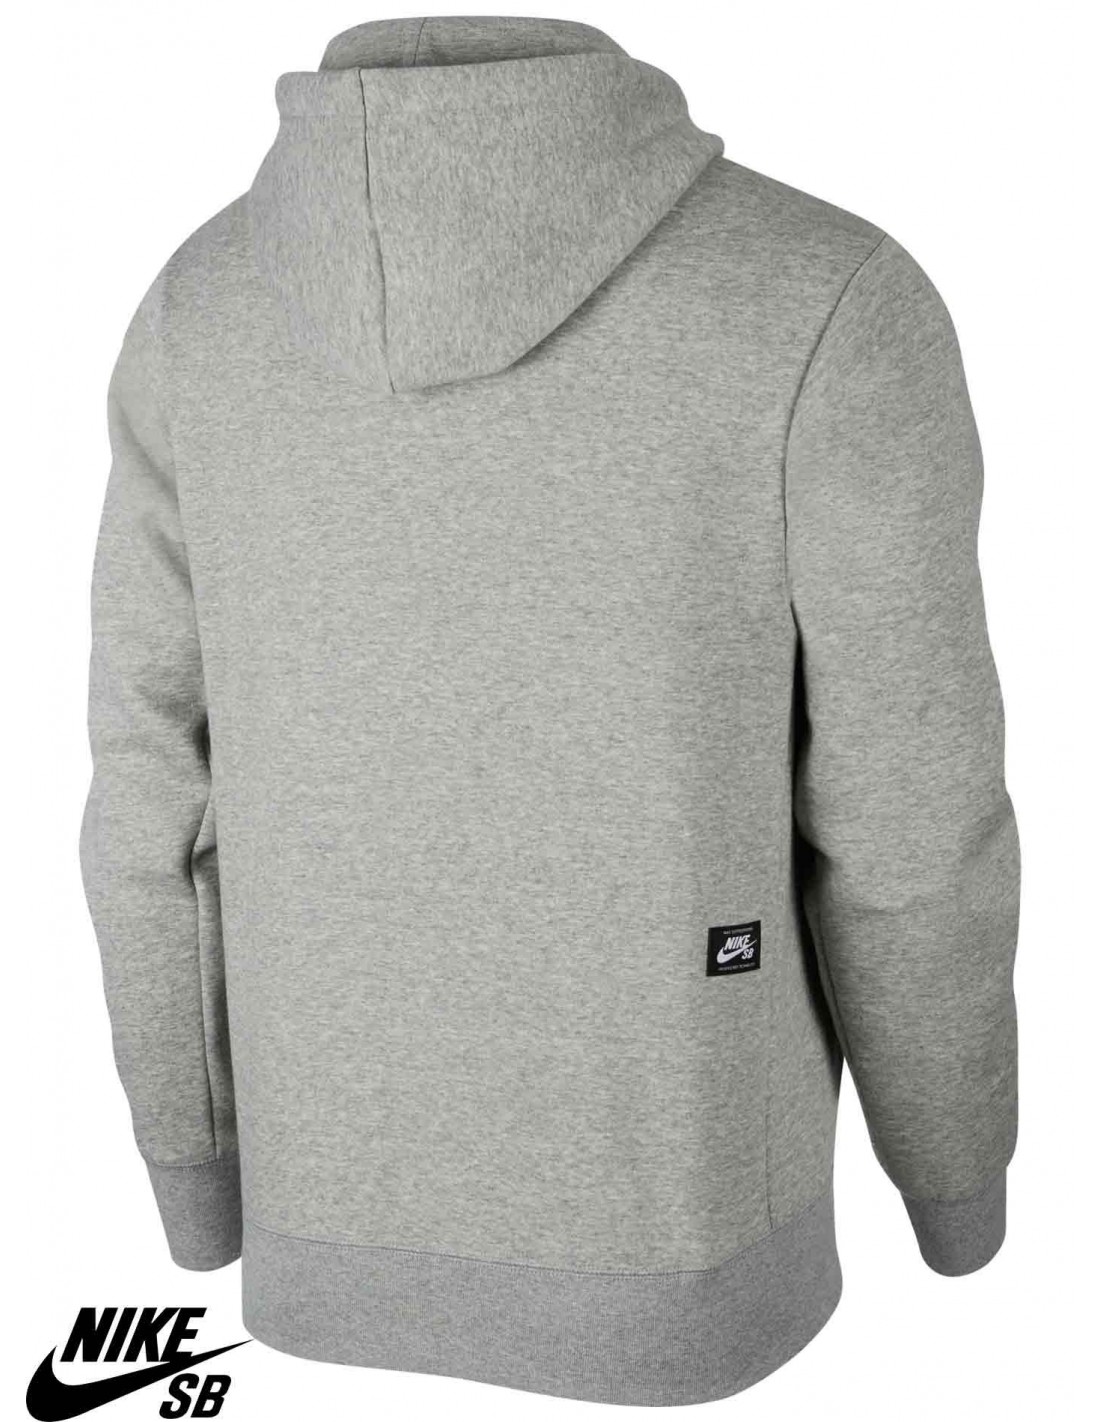 nike sb icon hoodie grey